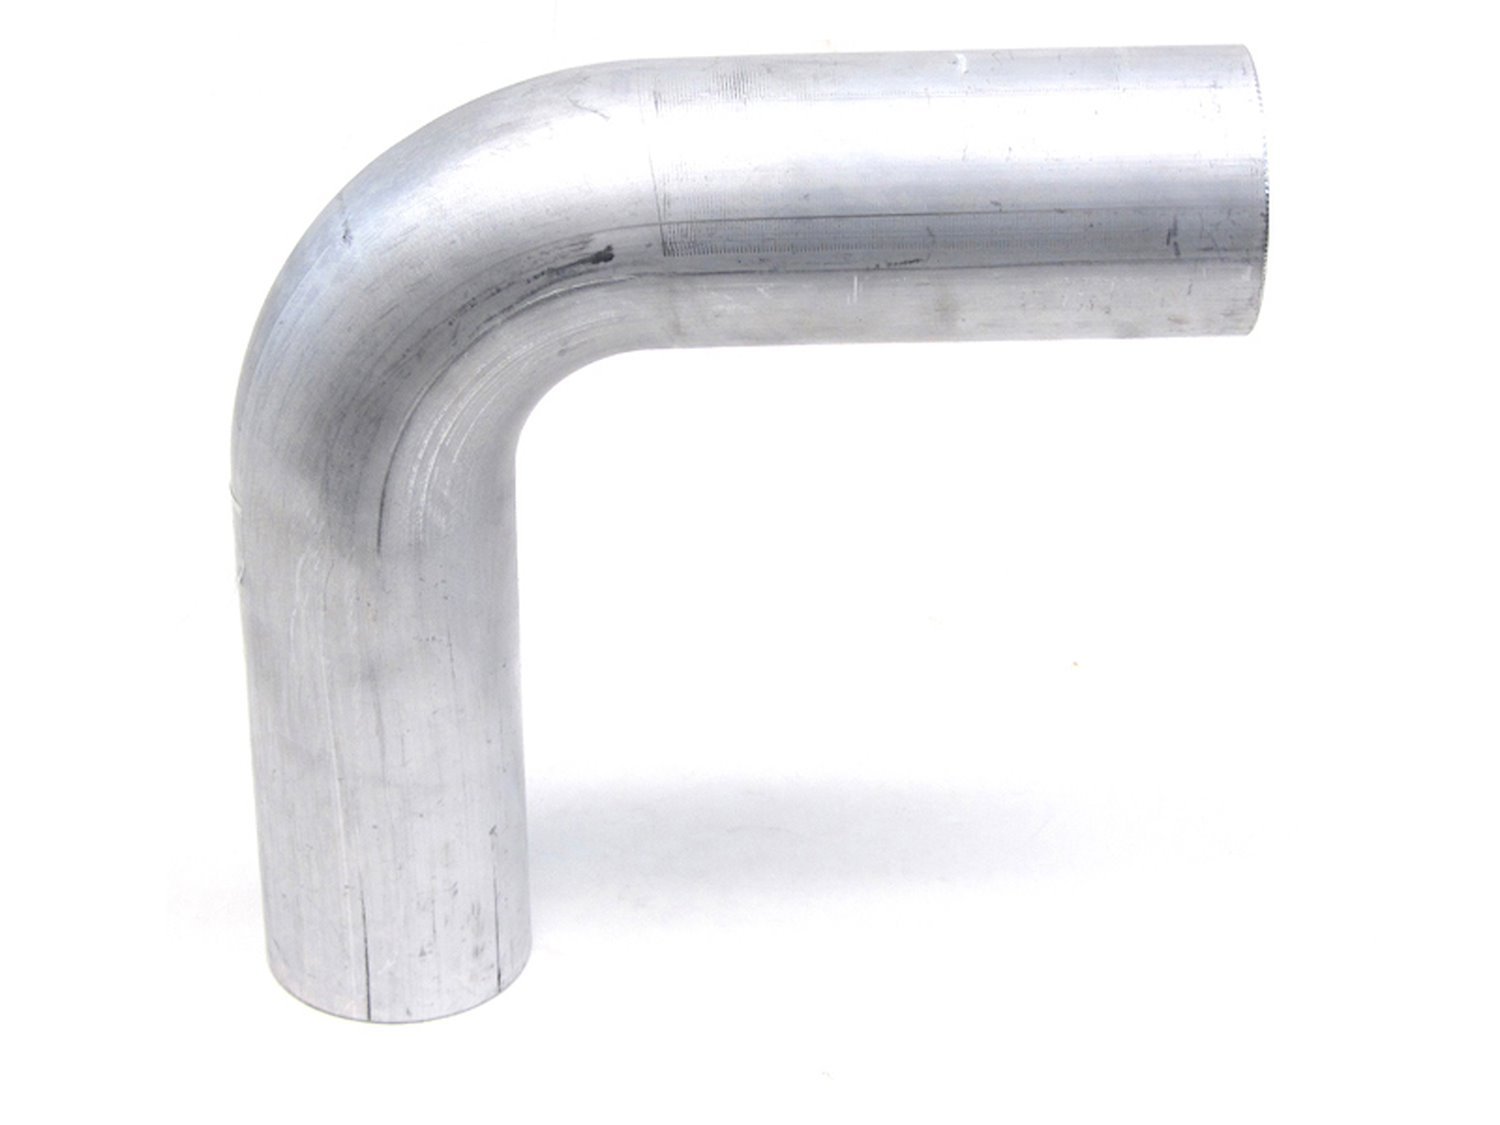 AT90-350-CLR-35 Aluminum Elbow Tube, 6061 Aluminum, 90-Degree Bend Elbow Tubing, 3-1/2 in. OD, Tight Radius, 3-1/2 in. CLR